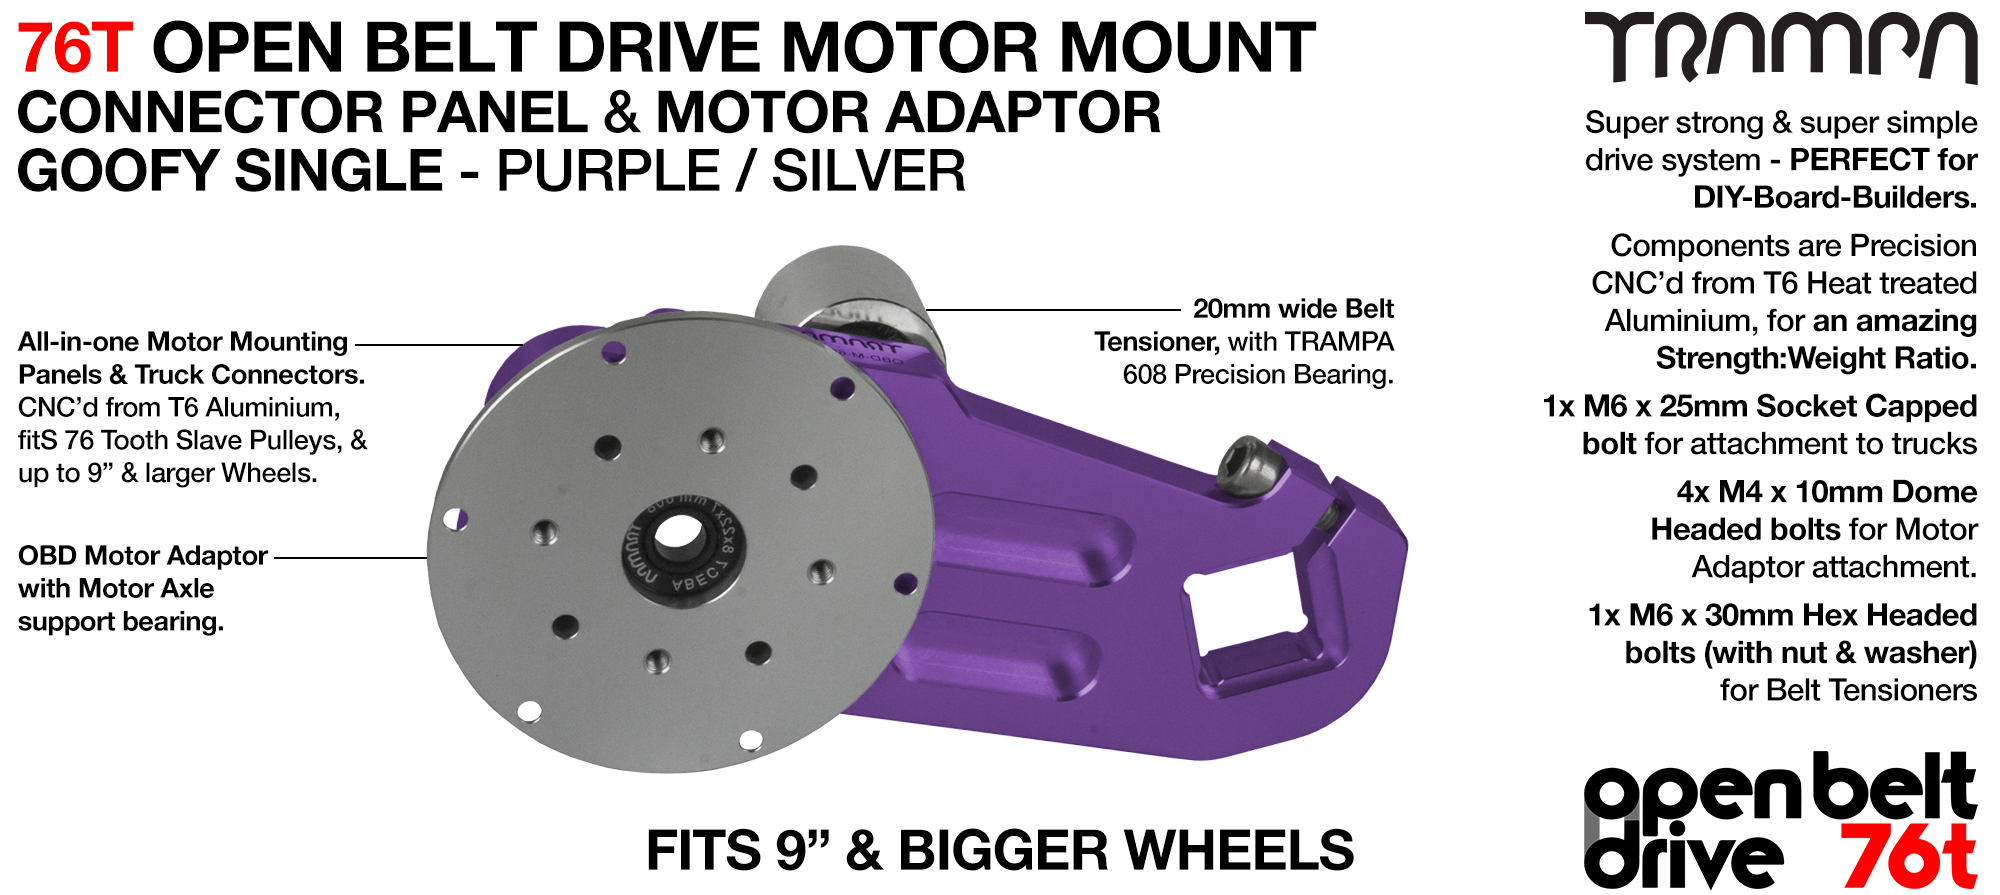 76T Open Belt Drive Motor Mount & Motor Adaptor - SINGLE PURPLE